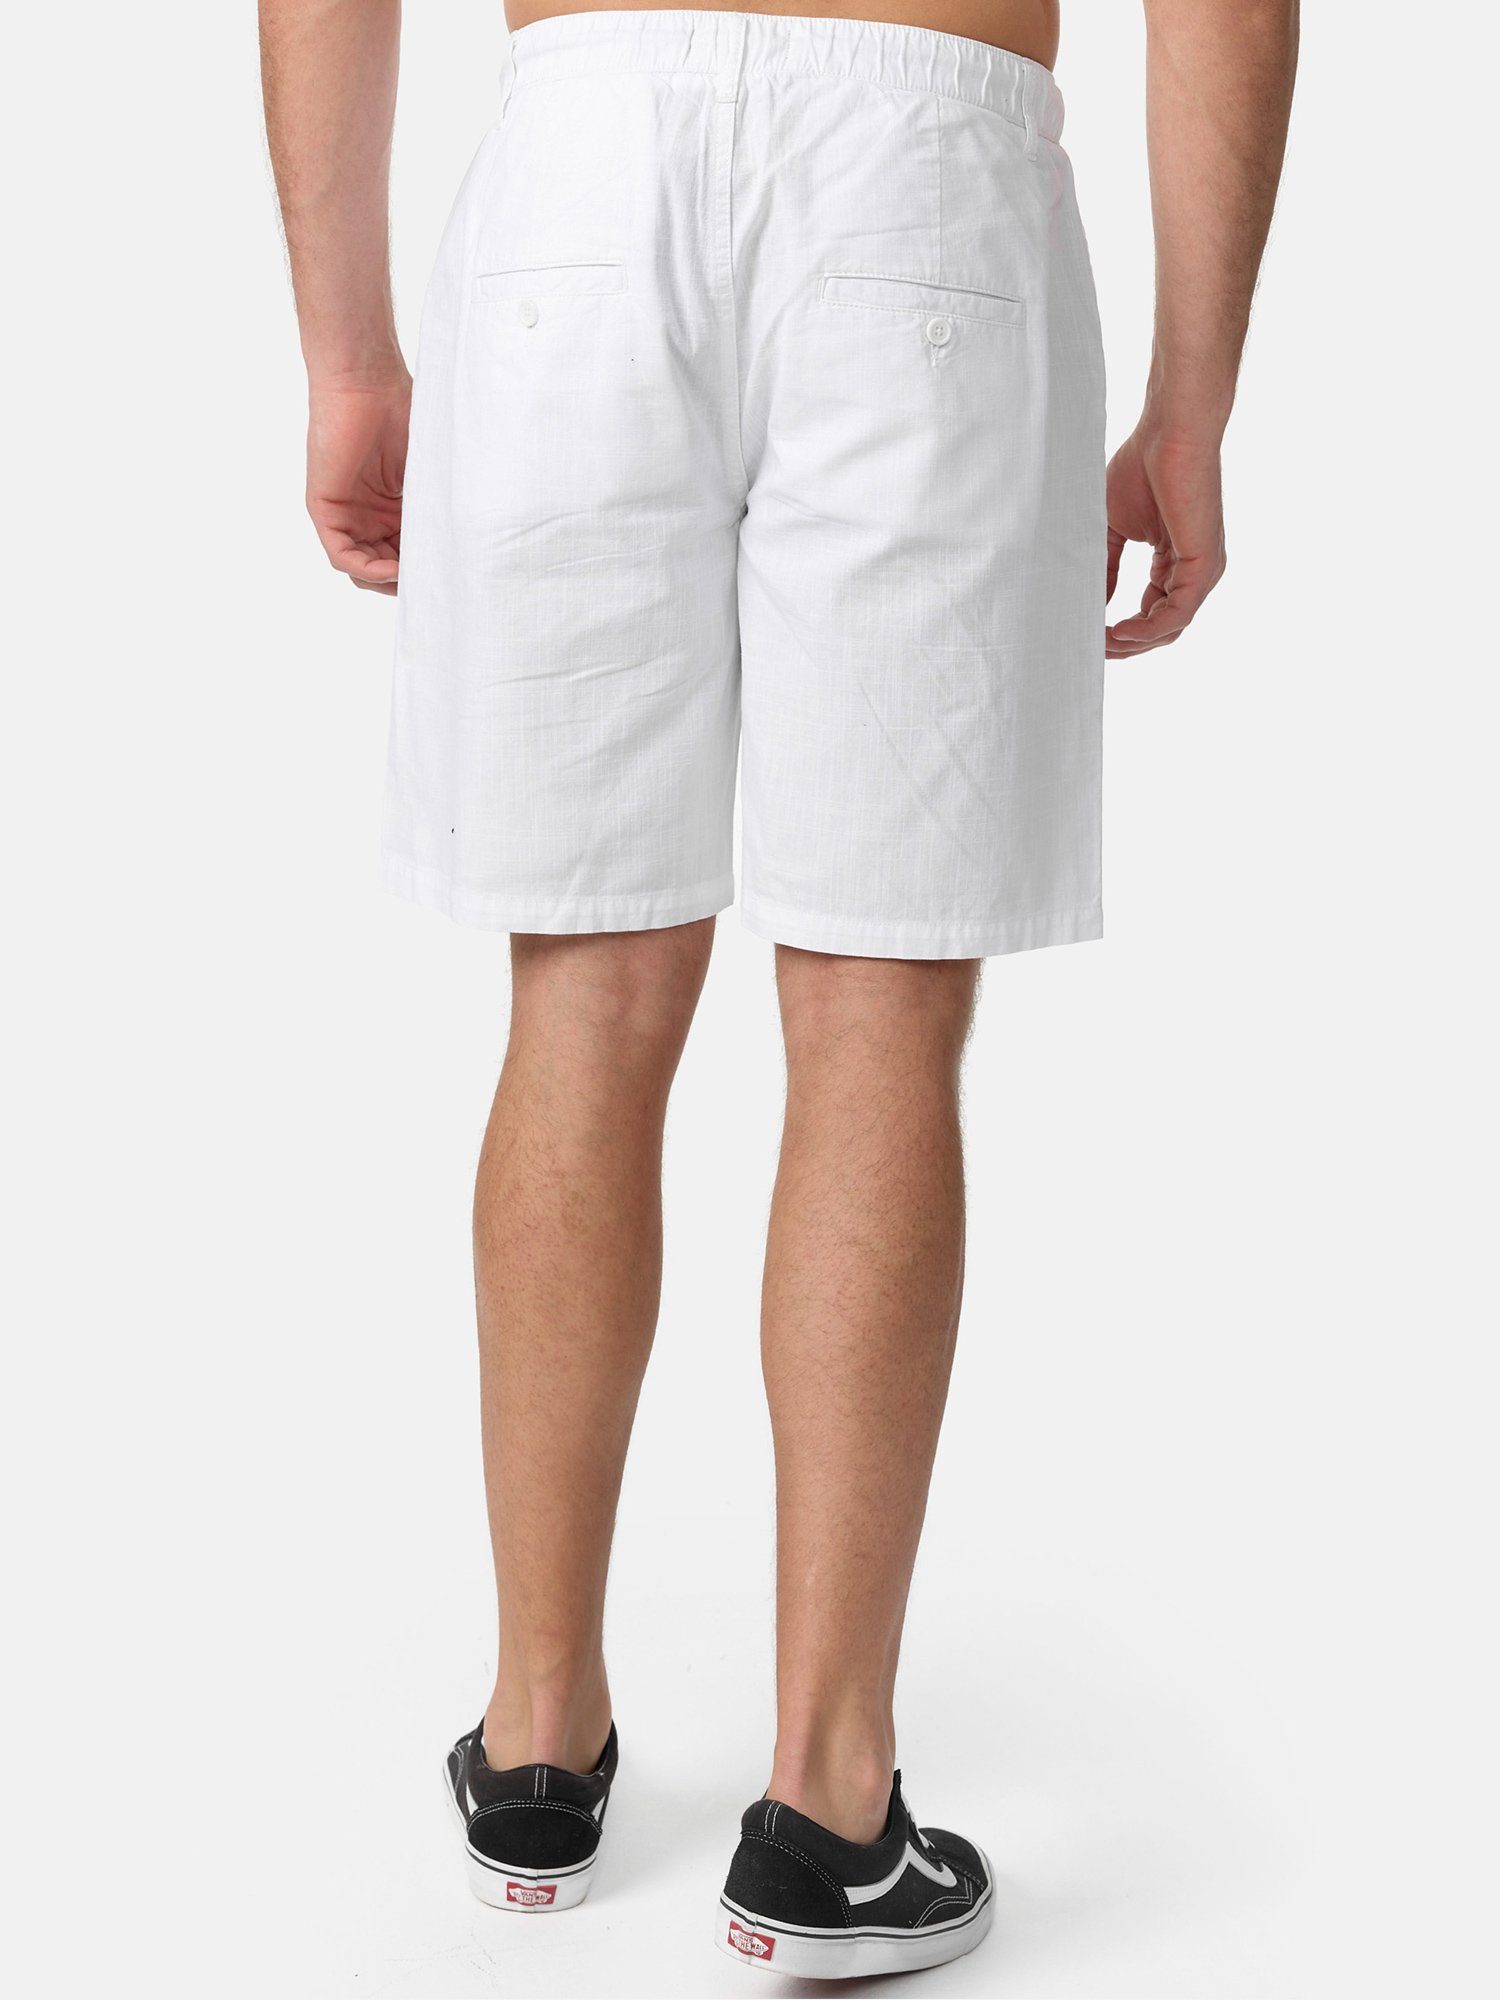 moderne in zeitlose Tazzio kurze Hose Leinen-Optik & A205 Shorts weiß